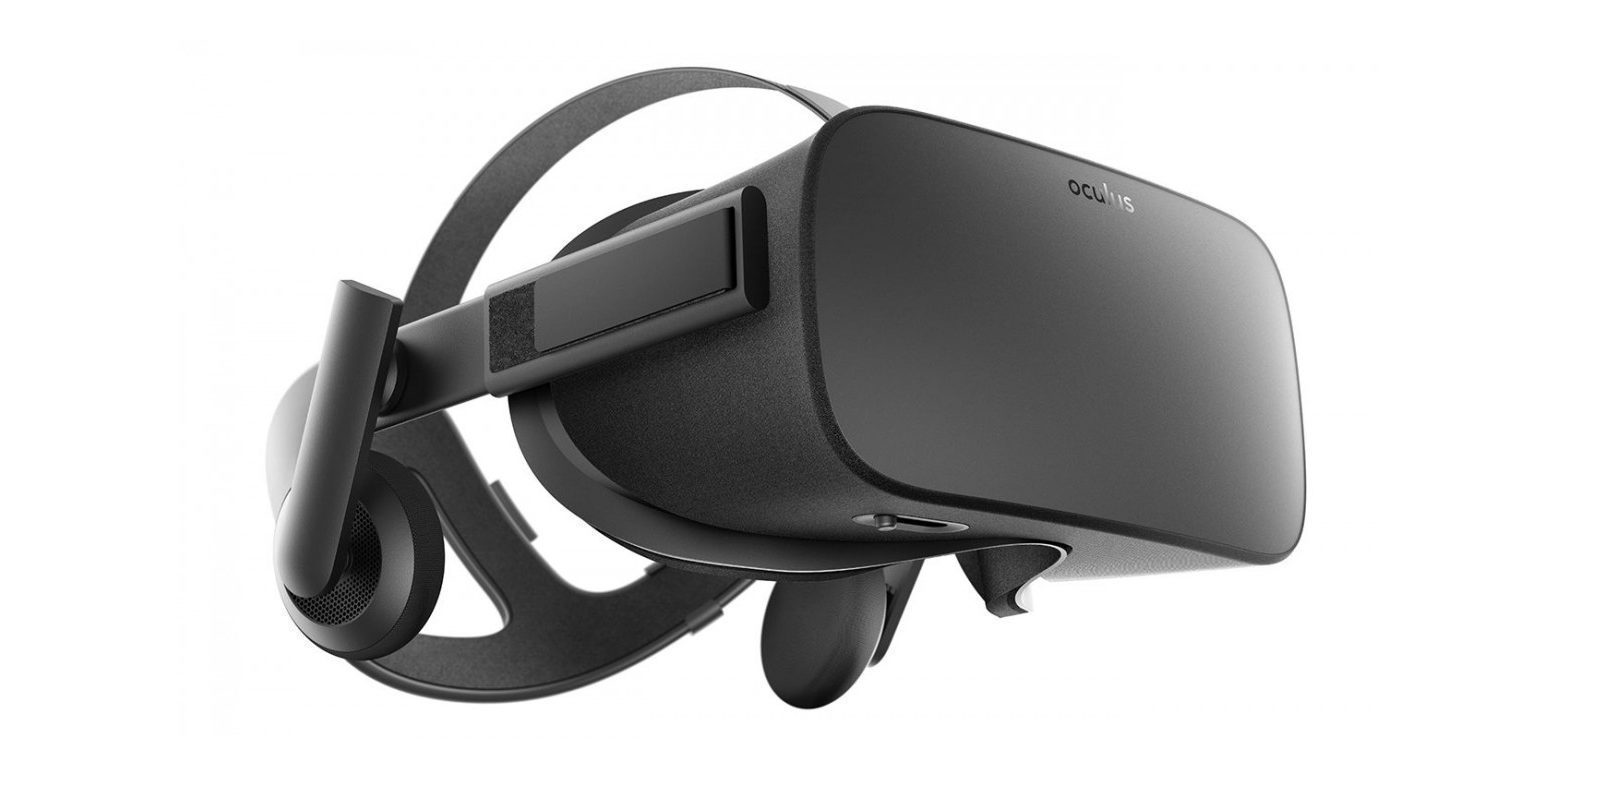 En Oculus creen que la realidad virtual ya tiene buenos juegos